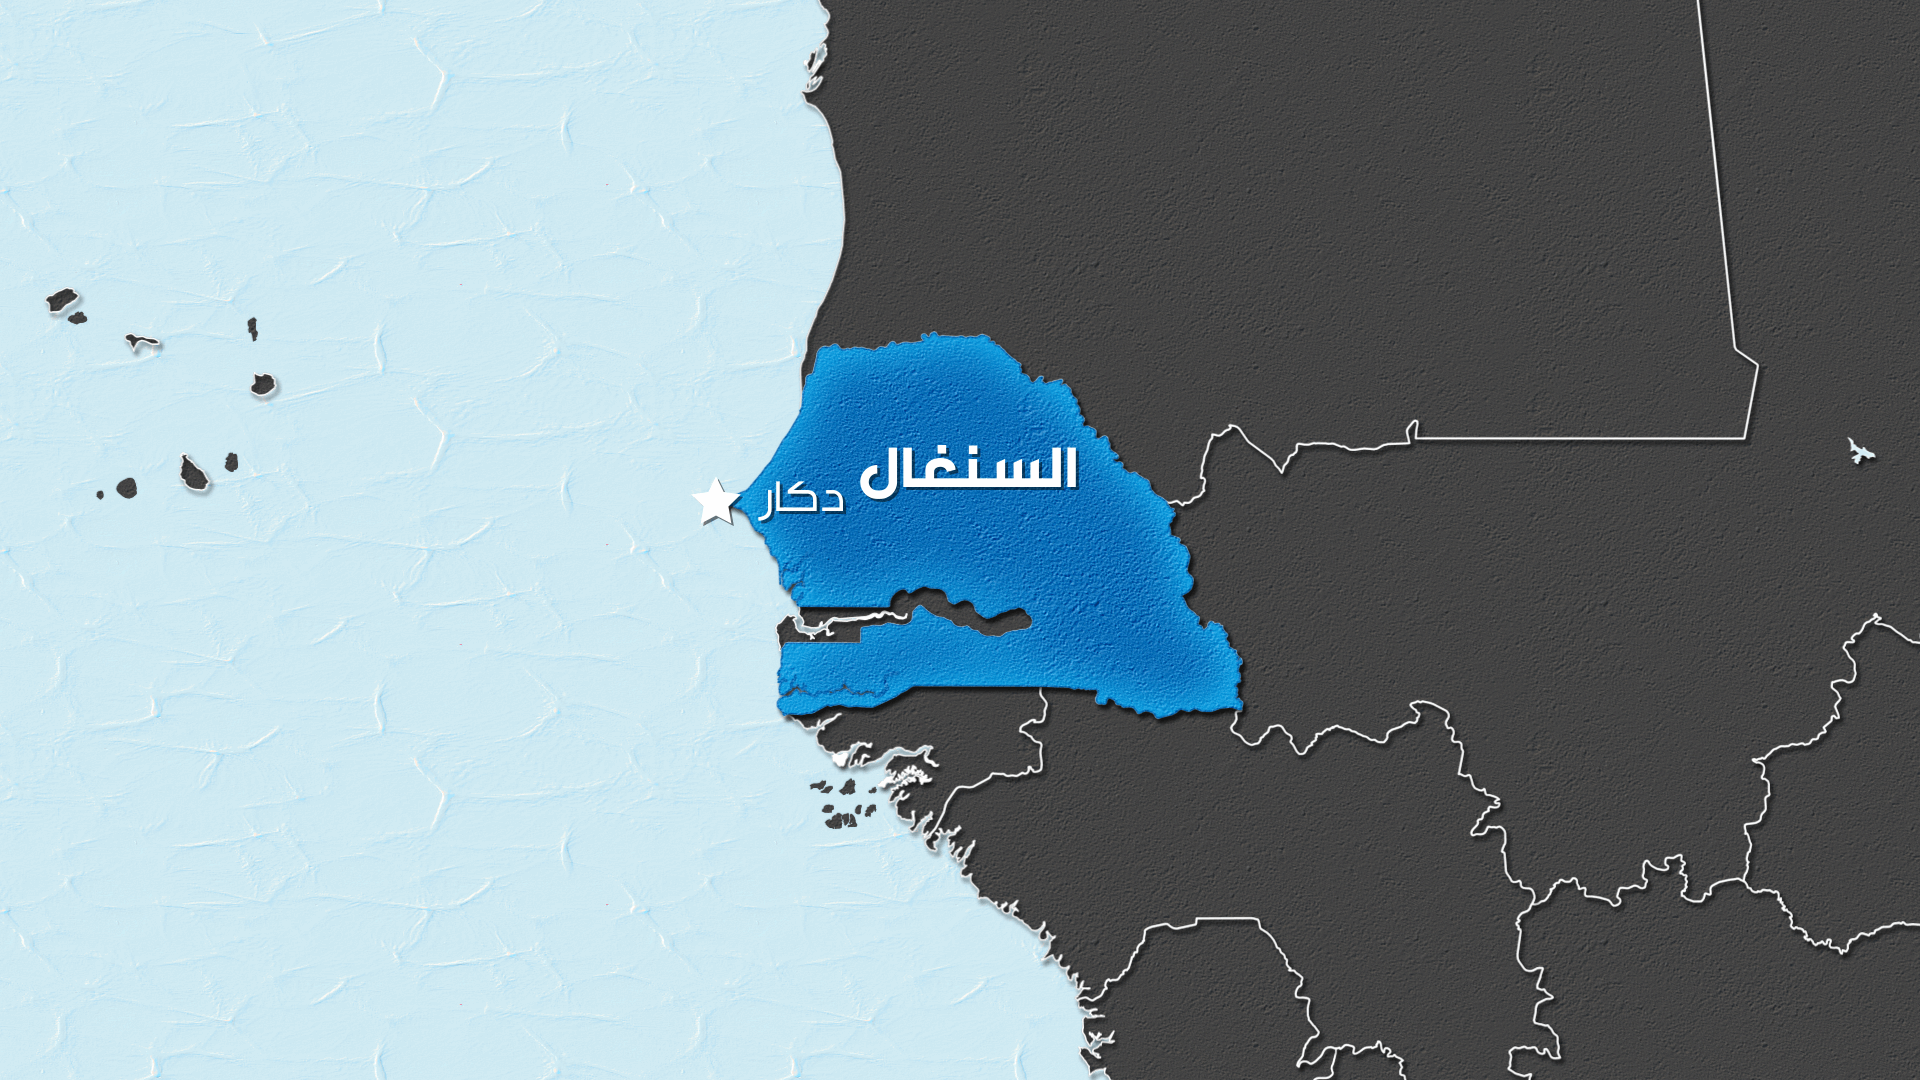 دكار تغلق بعثاتها في الخارج بسبب الاضطرابات في السنغال